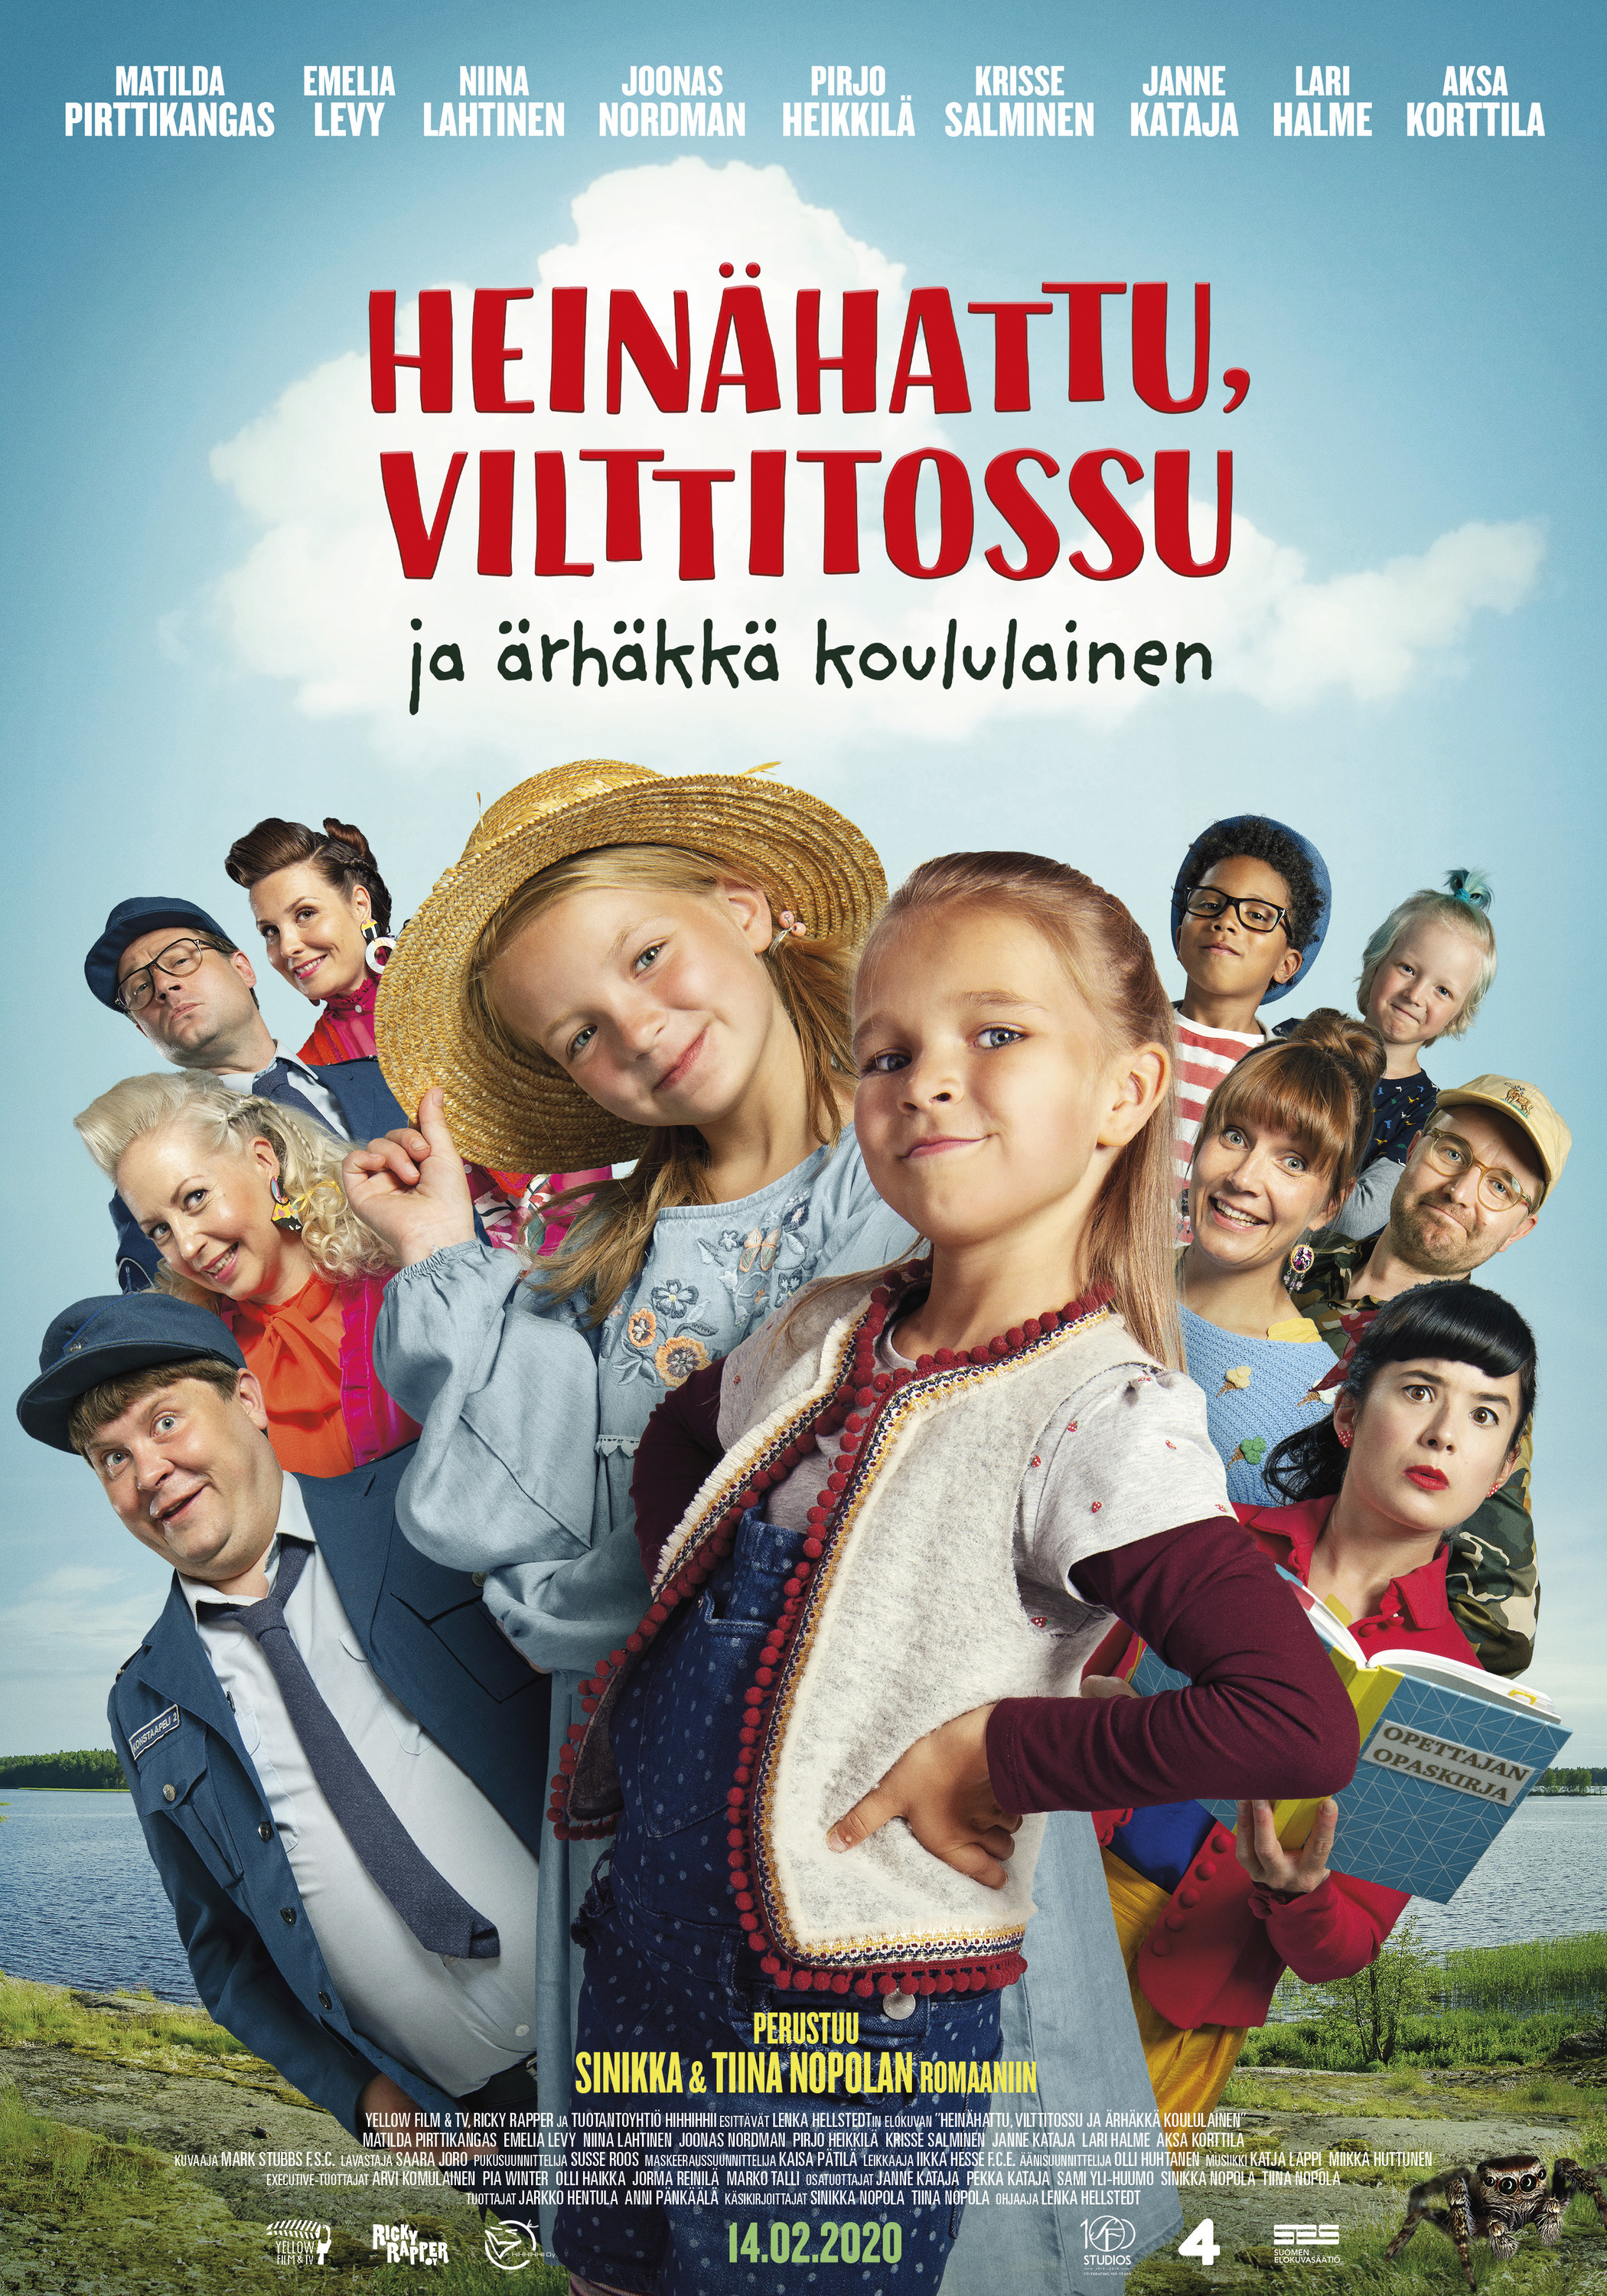 Mega Sized Movie Poster Image for Heinähattu, Vilttitossu ja ärhäkkä koululainen 